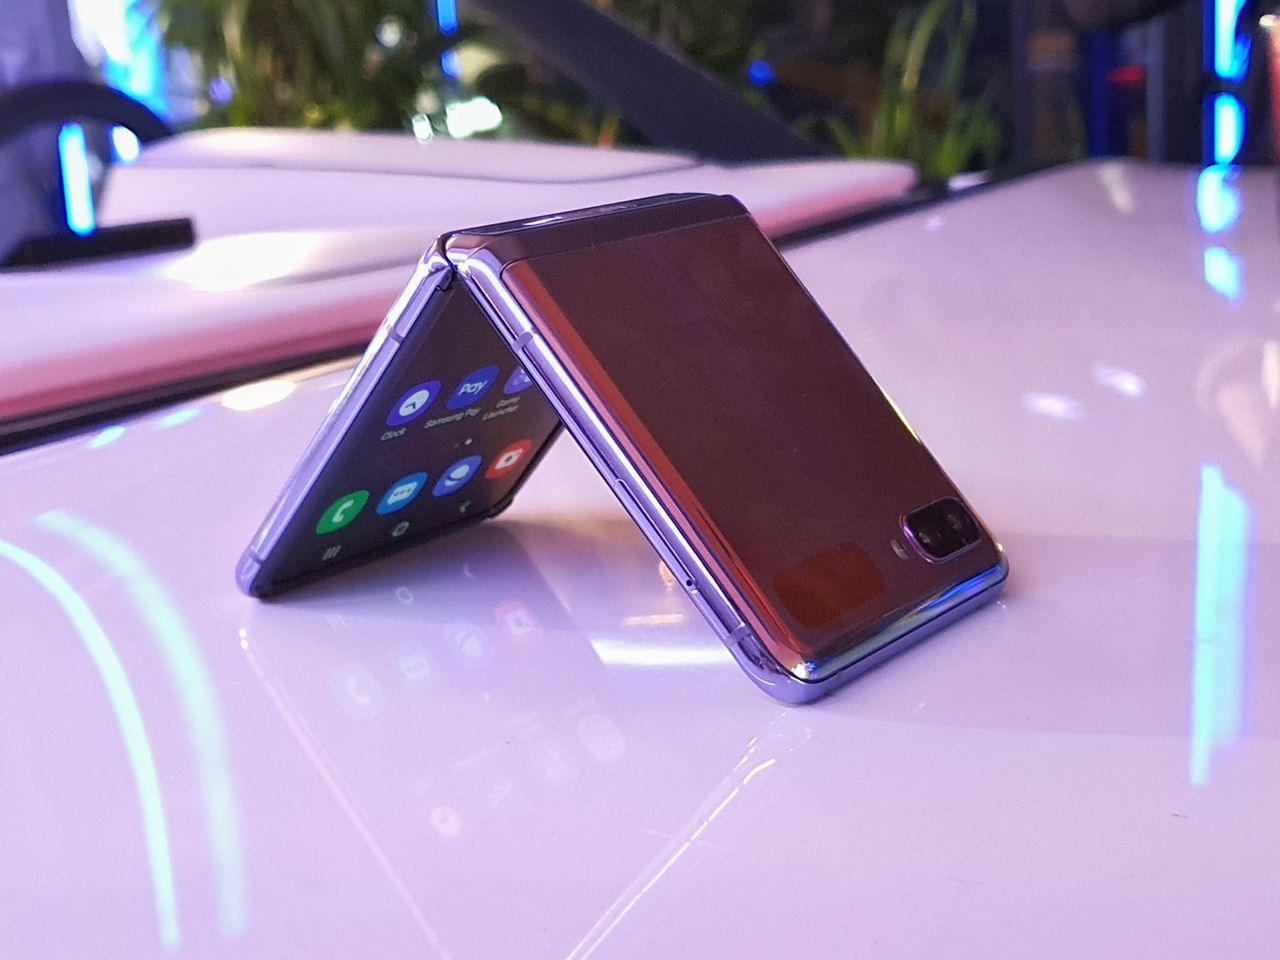 Samsung Galaxy Z Flip udaje zwykły smartfon skuteczniej niż Motorola razr. Tak, to ogromna zaleta